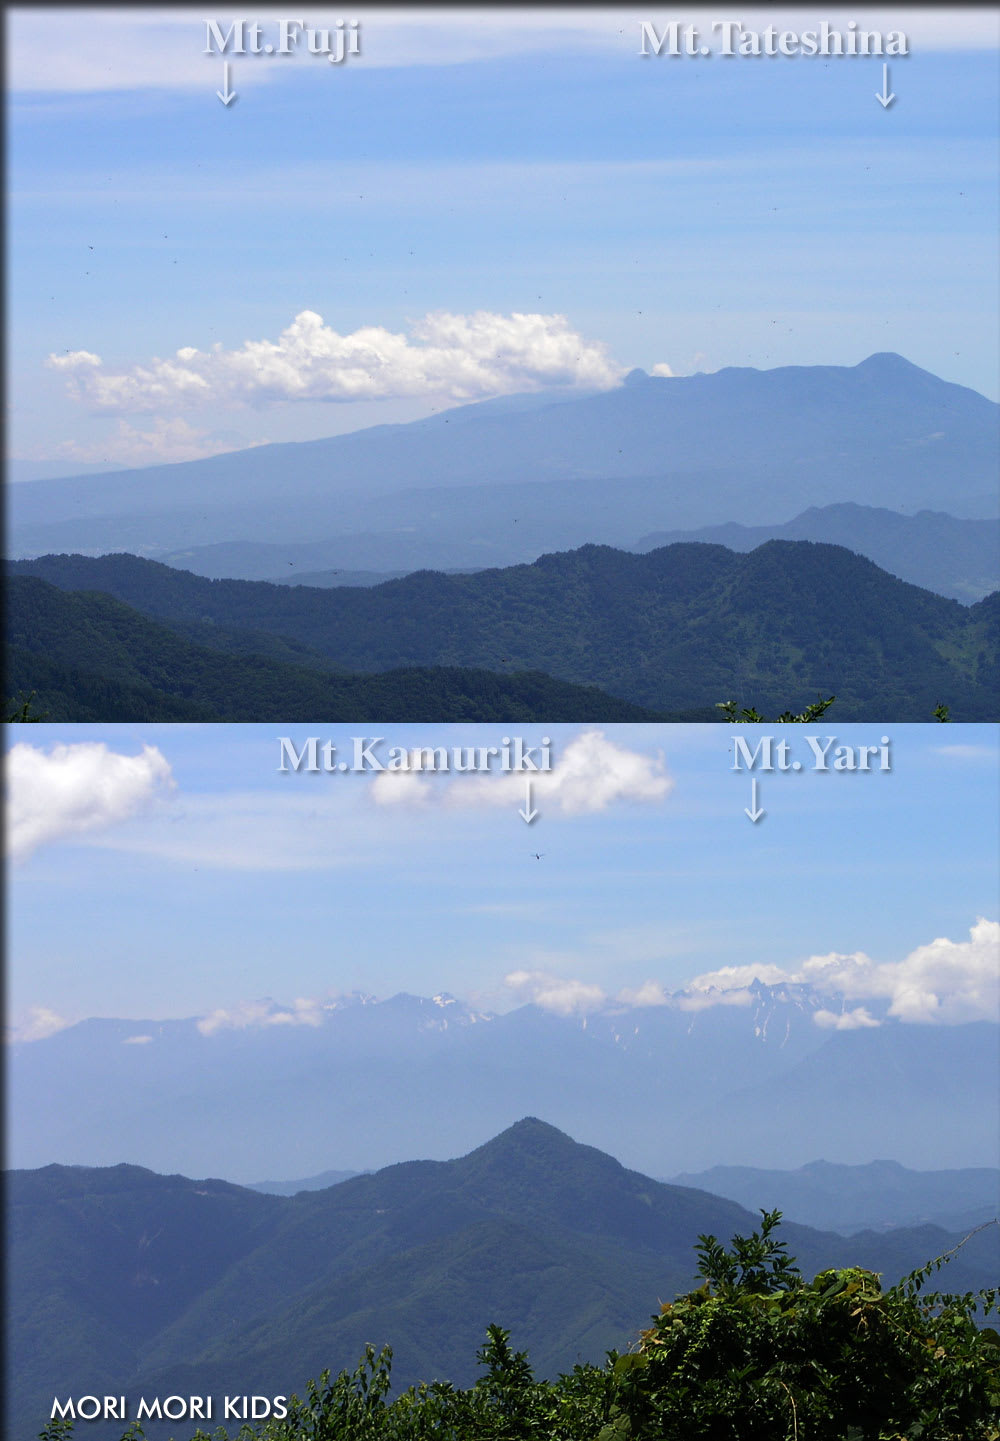 鏡台山から富士山が見えた 妻女山里山通信 モリモリキッズ